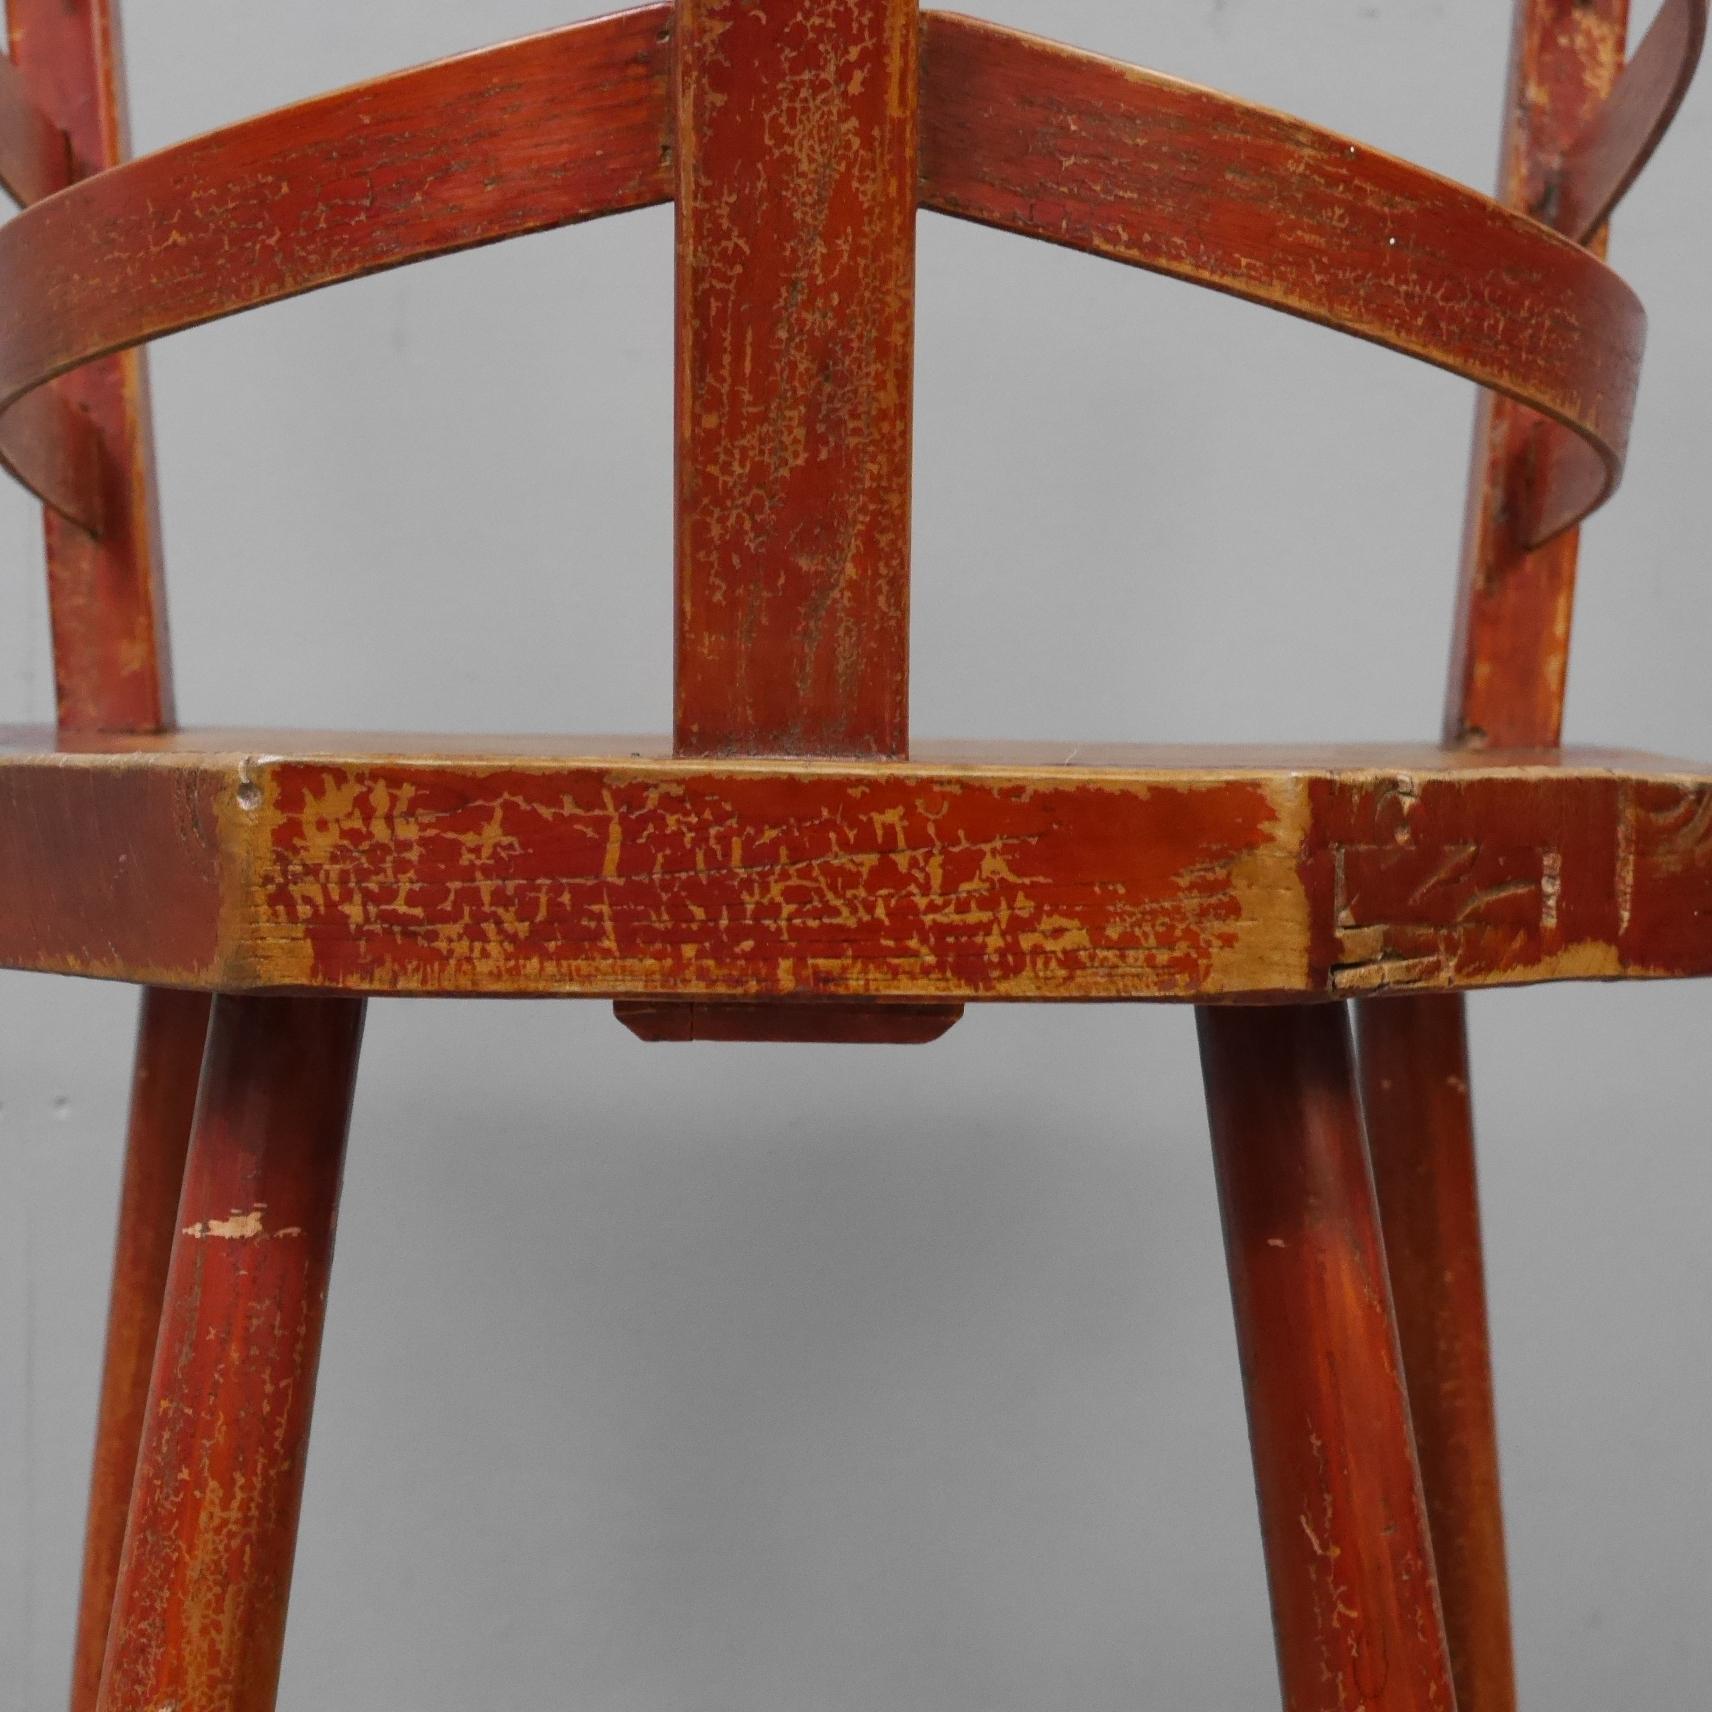 Chaise vernaculaire irlandaise de constructeur de bateaux.
Une chaise magnifiquement réalisée, d'une forme et d'une couleur excellentes. L'assise en dalle épaisse repose sur quatre pieds tournés et soutient le dossier unique avec des 